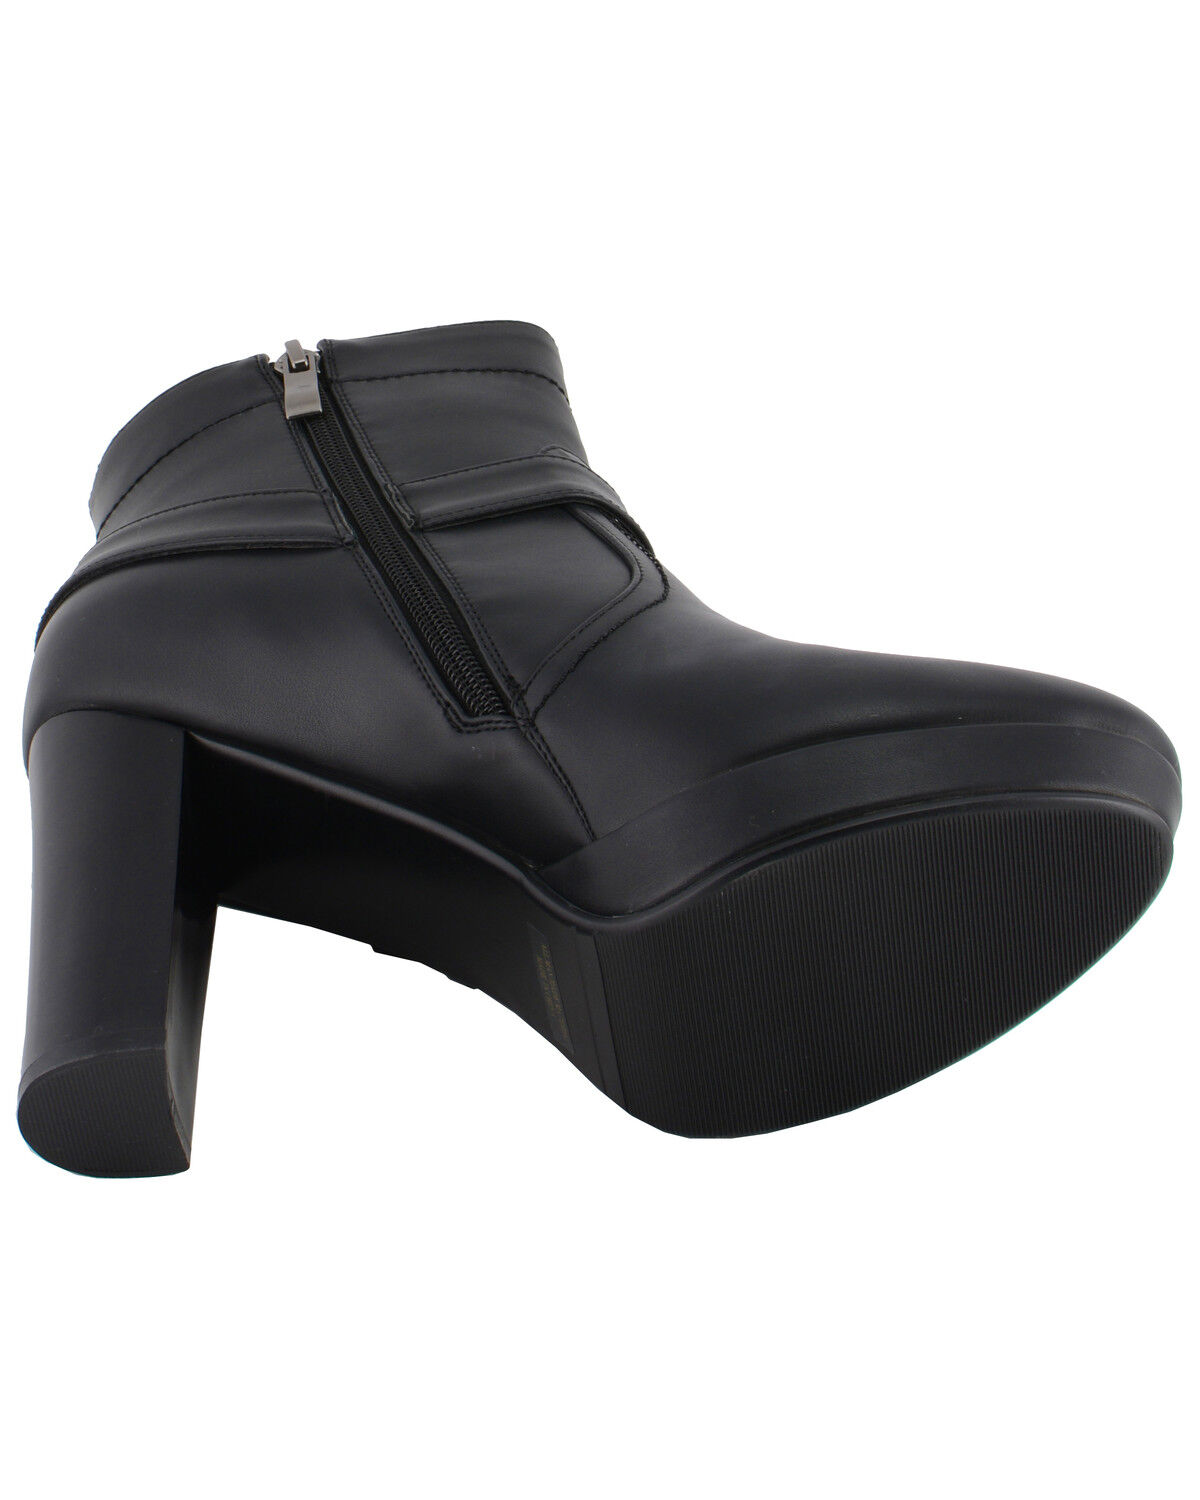 black booties medium heel